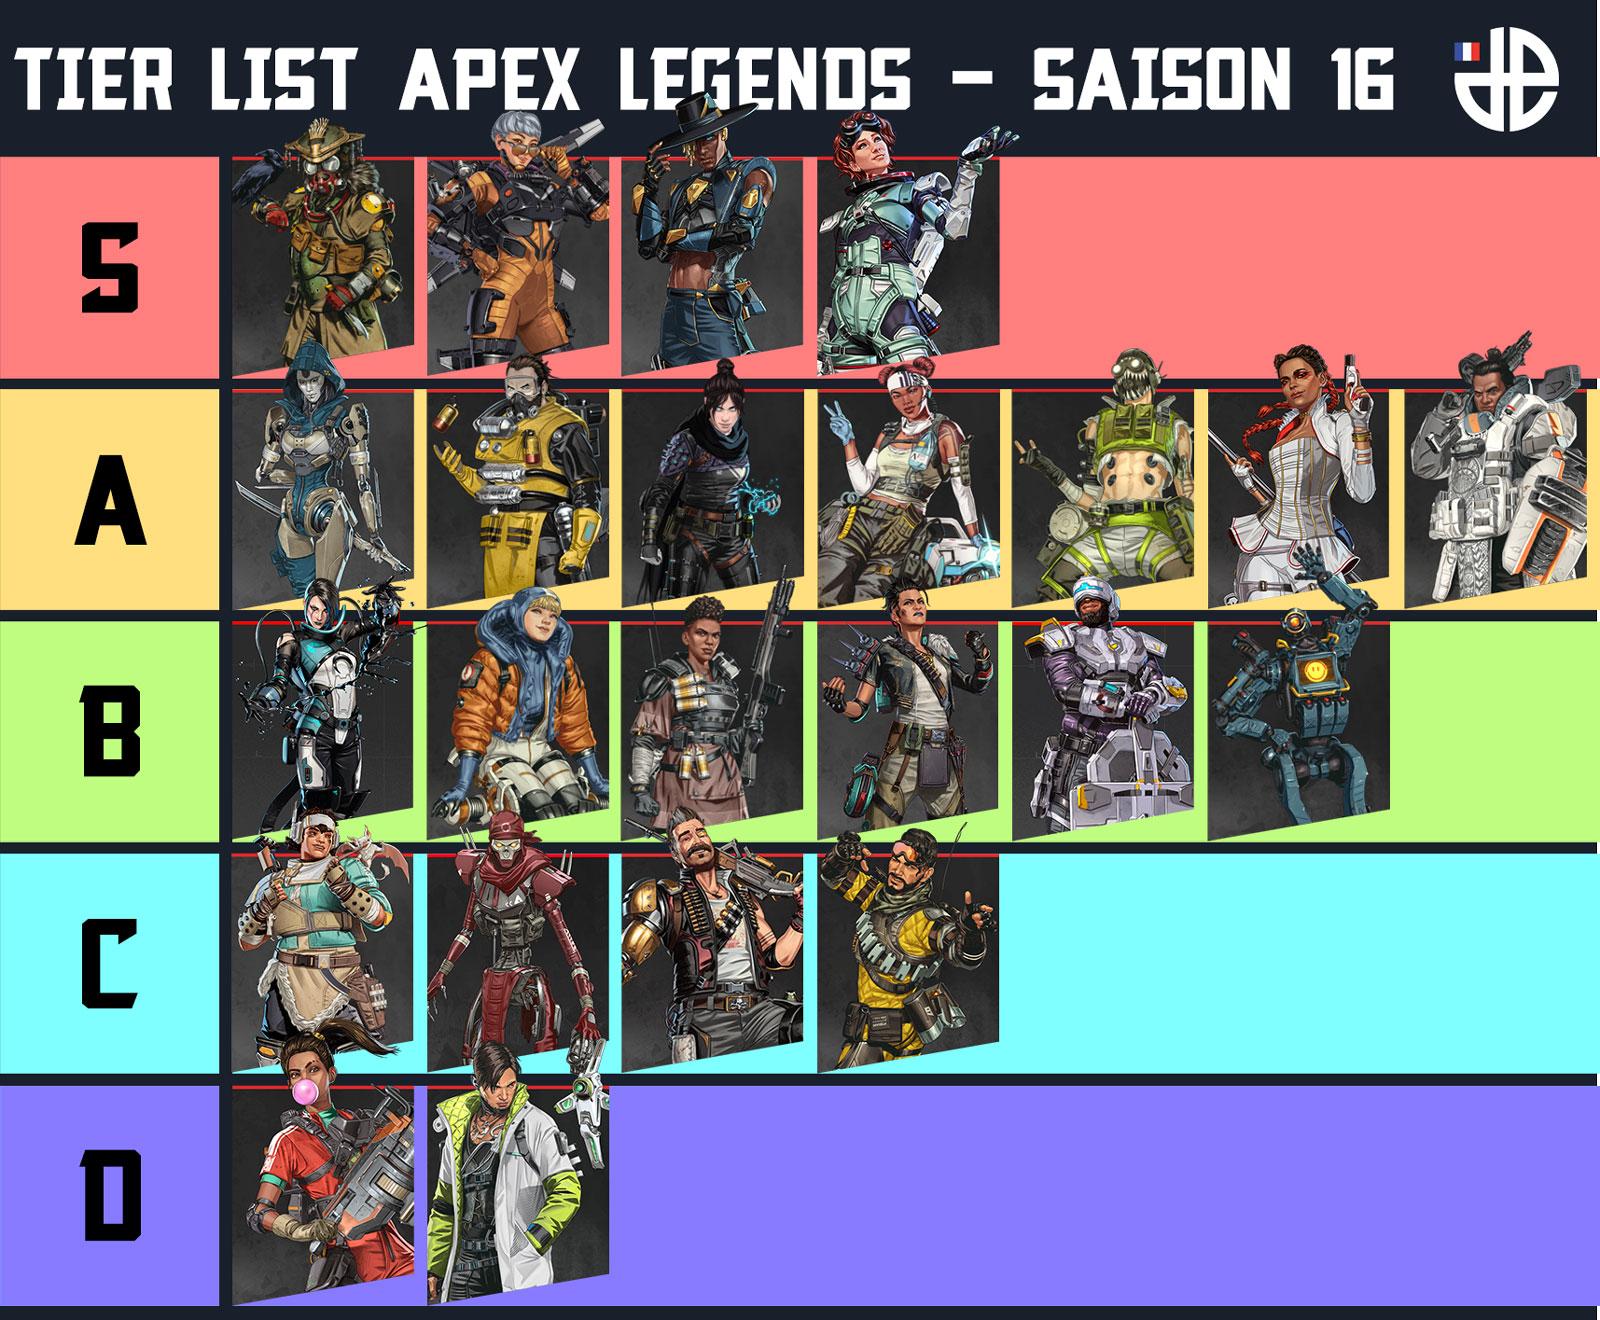 Tier List des légendes Apex Legends - Saison 16